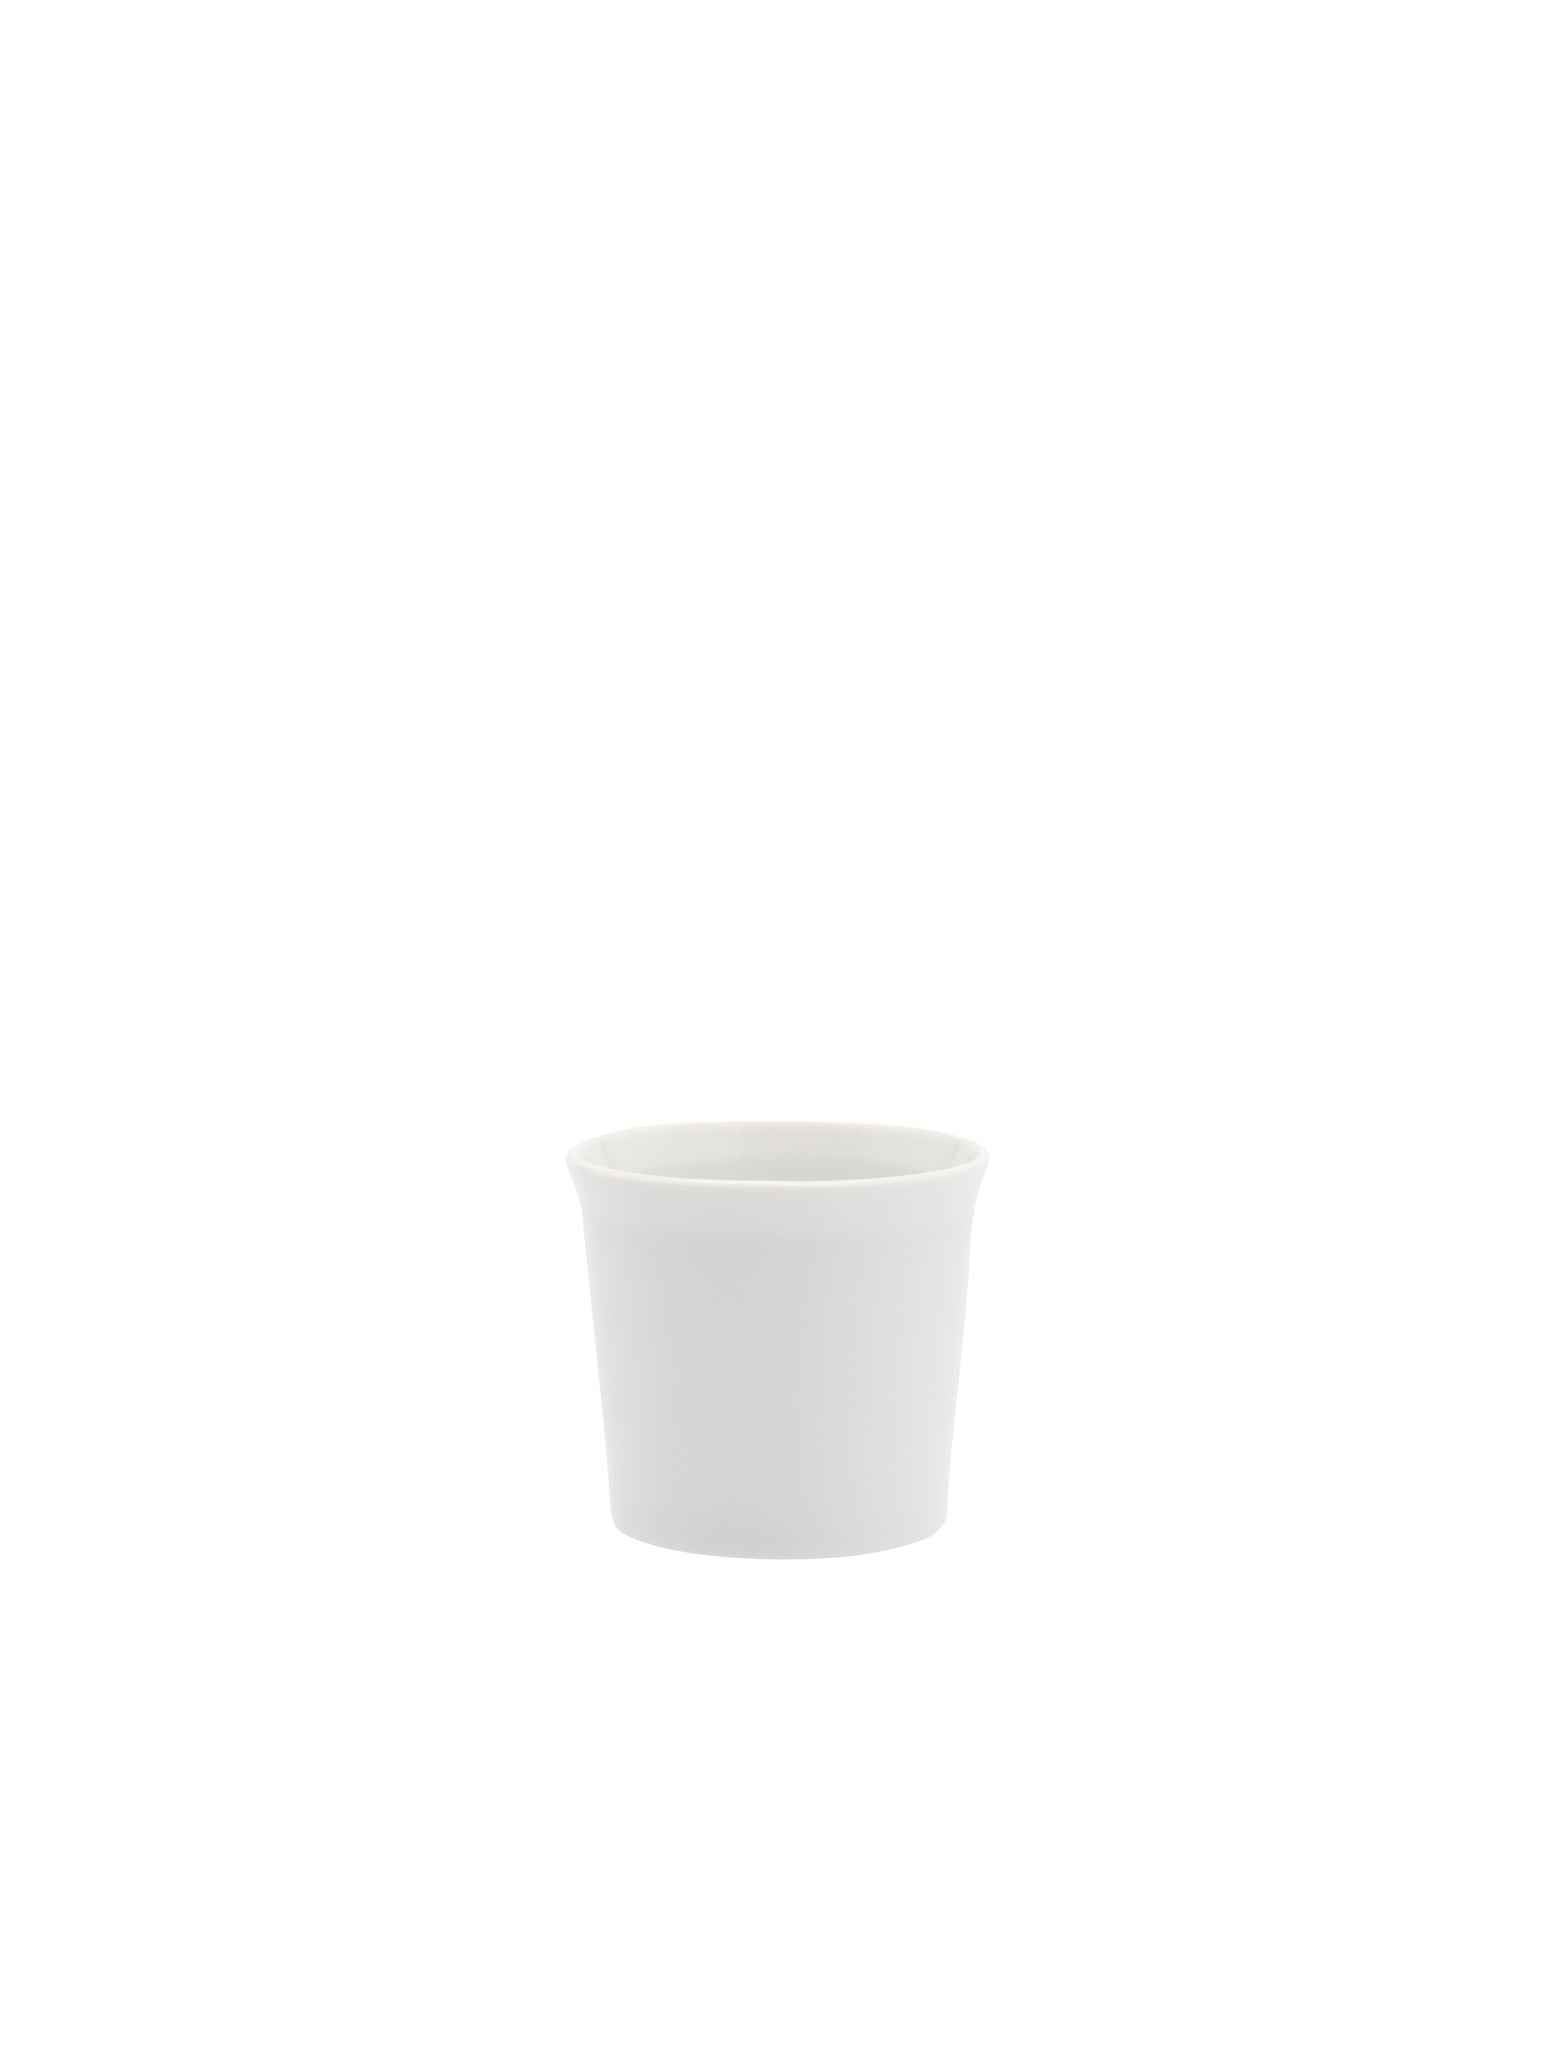 TY Espresso Cup glazed white